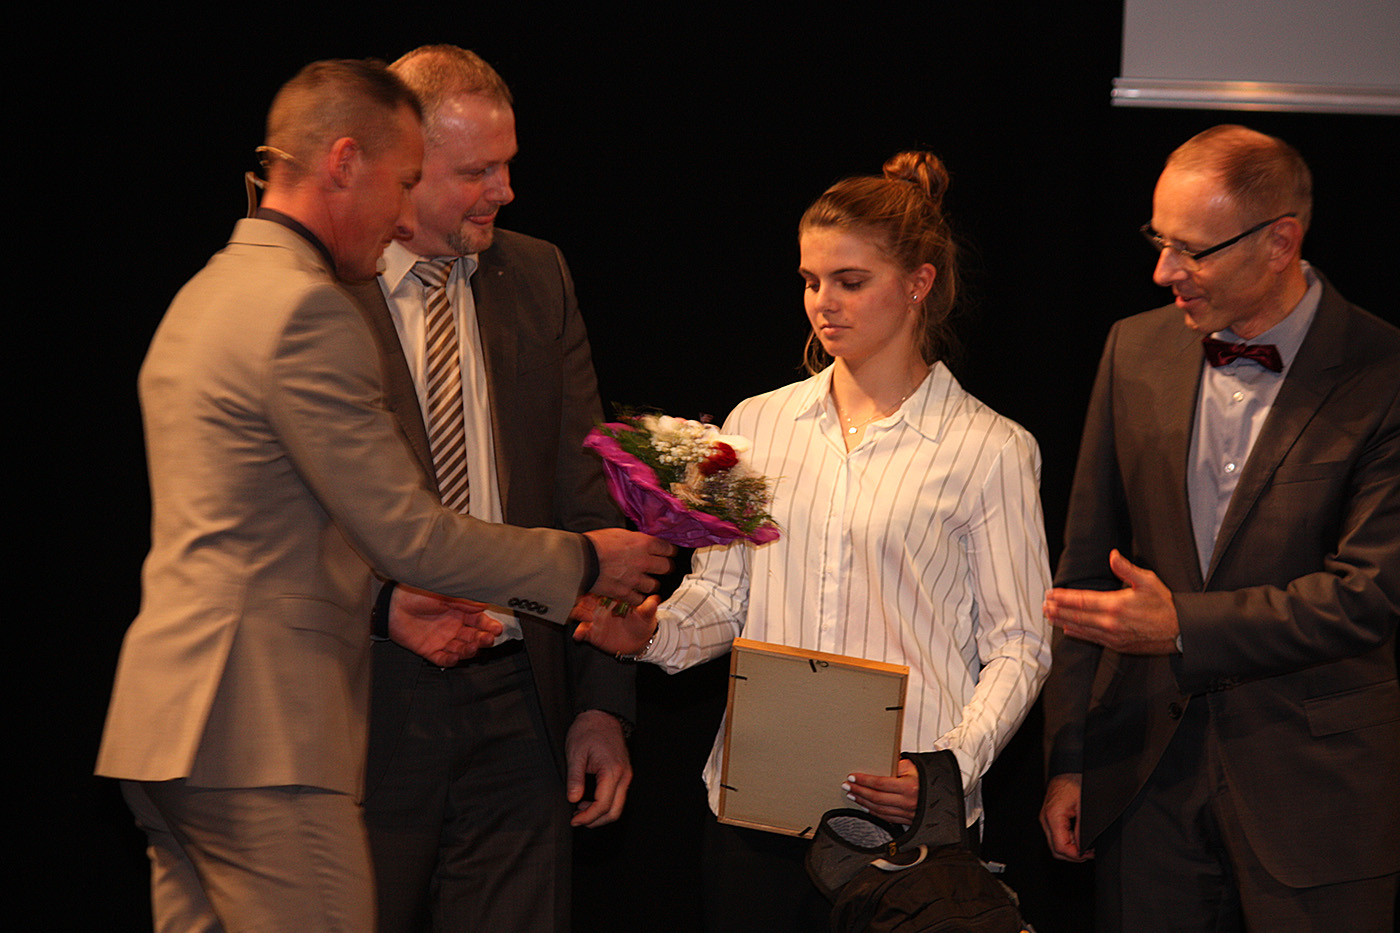 Sportschulkoordinator Gemar Götze, Landesrepräsentant AOK Sachsen-Anhalt Henry Saage, und Schuldirektor Axel Schmidt sind die ersten Gratulanten von Stella Mehlhorn.